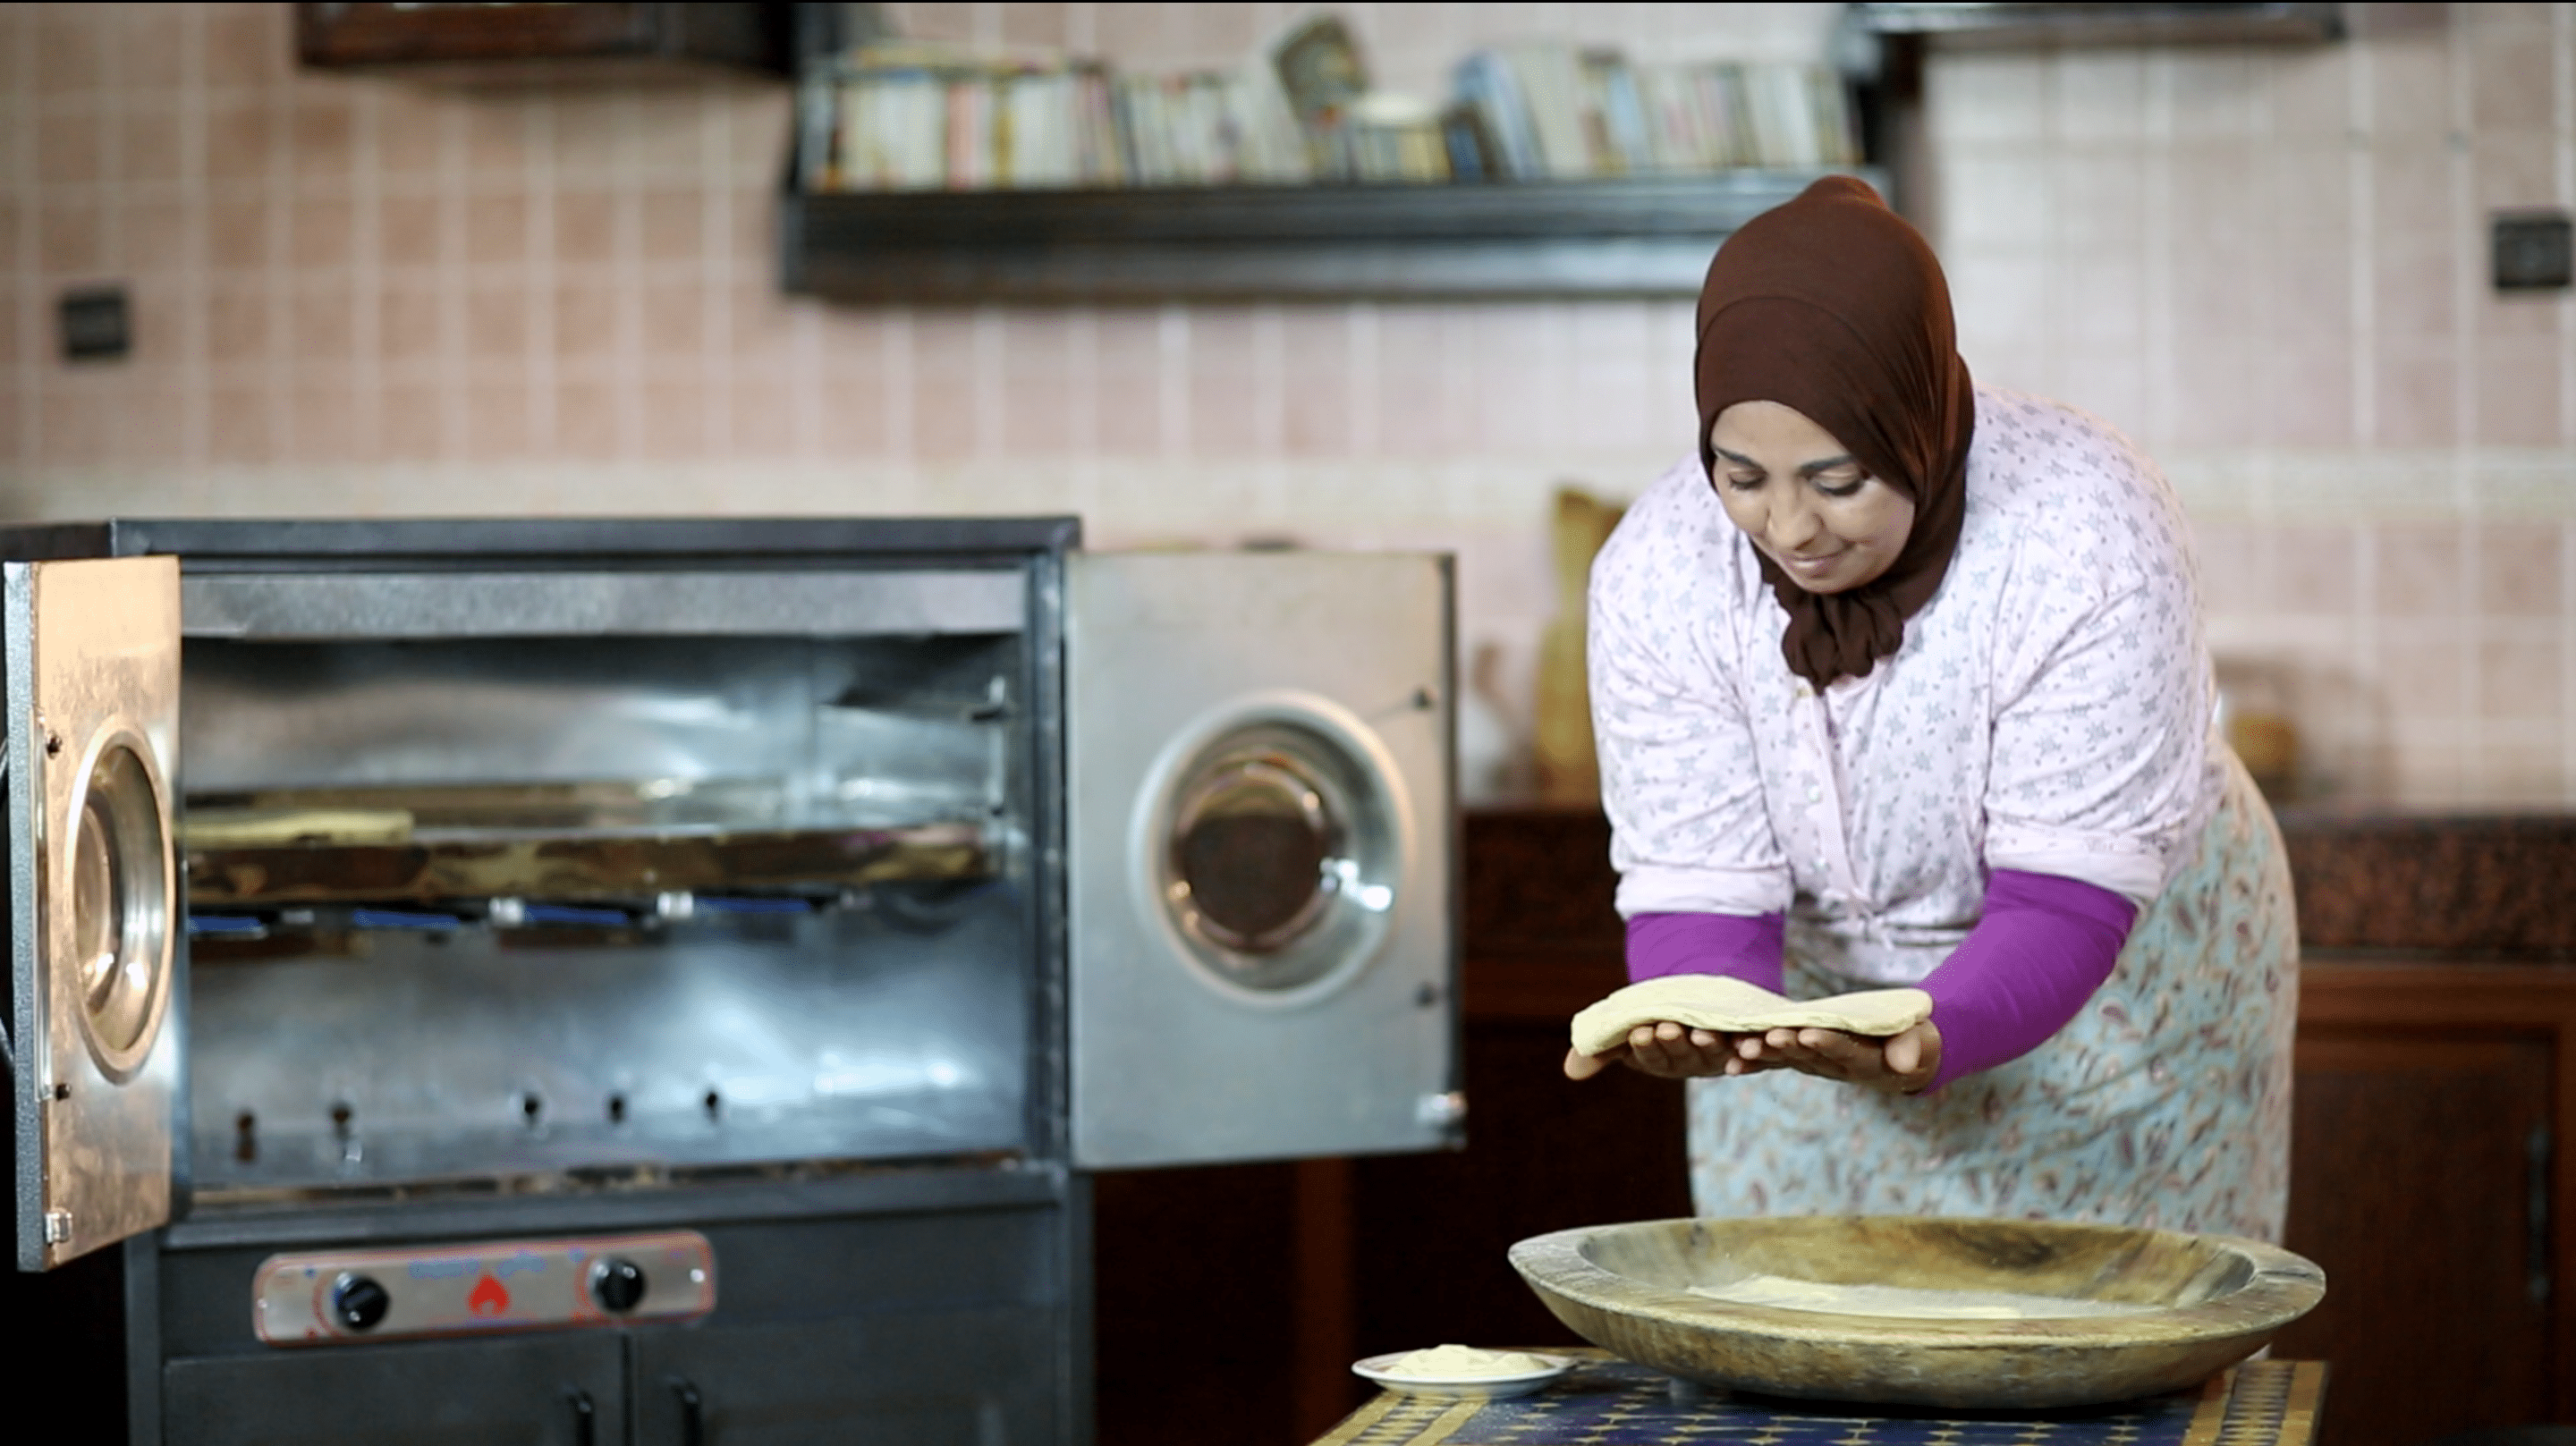 Partenariat – La Fondation Air Liquide soutient la cuisson durable au Maroc